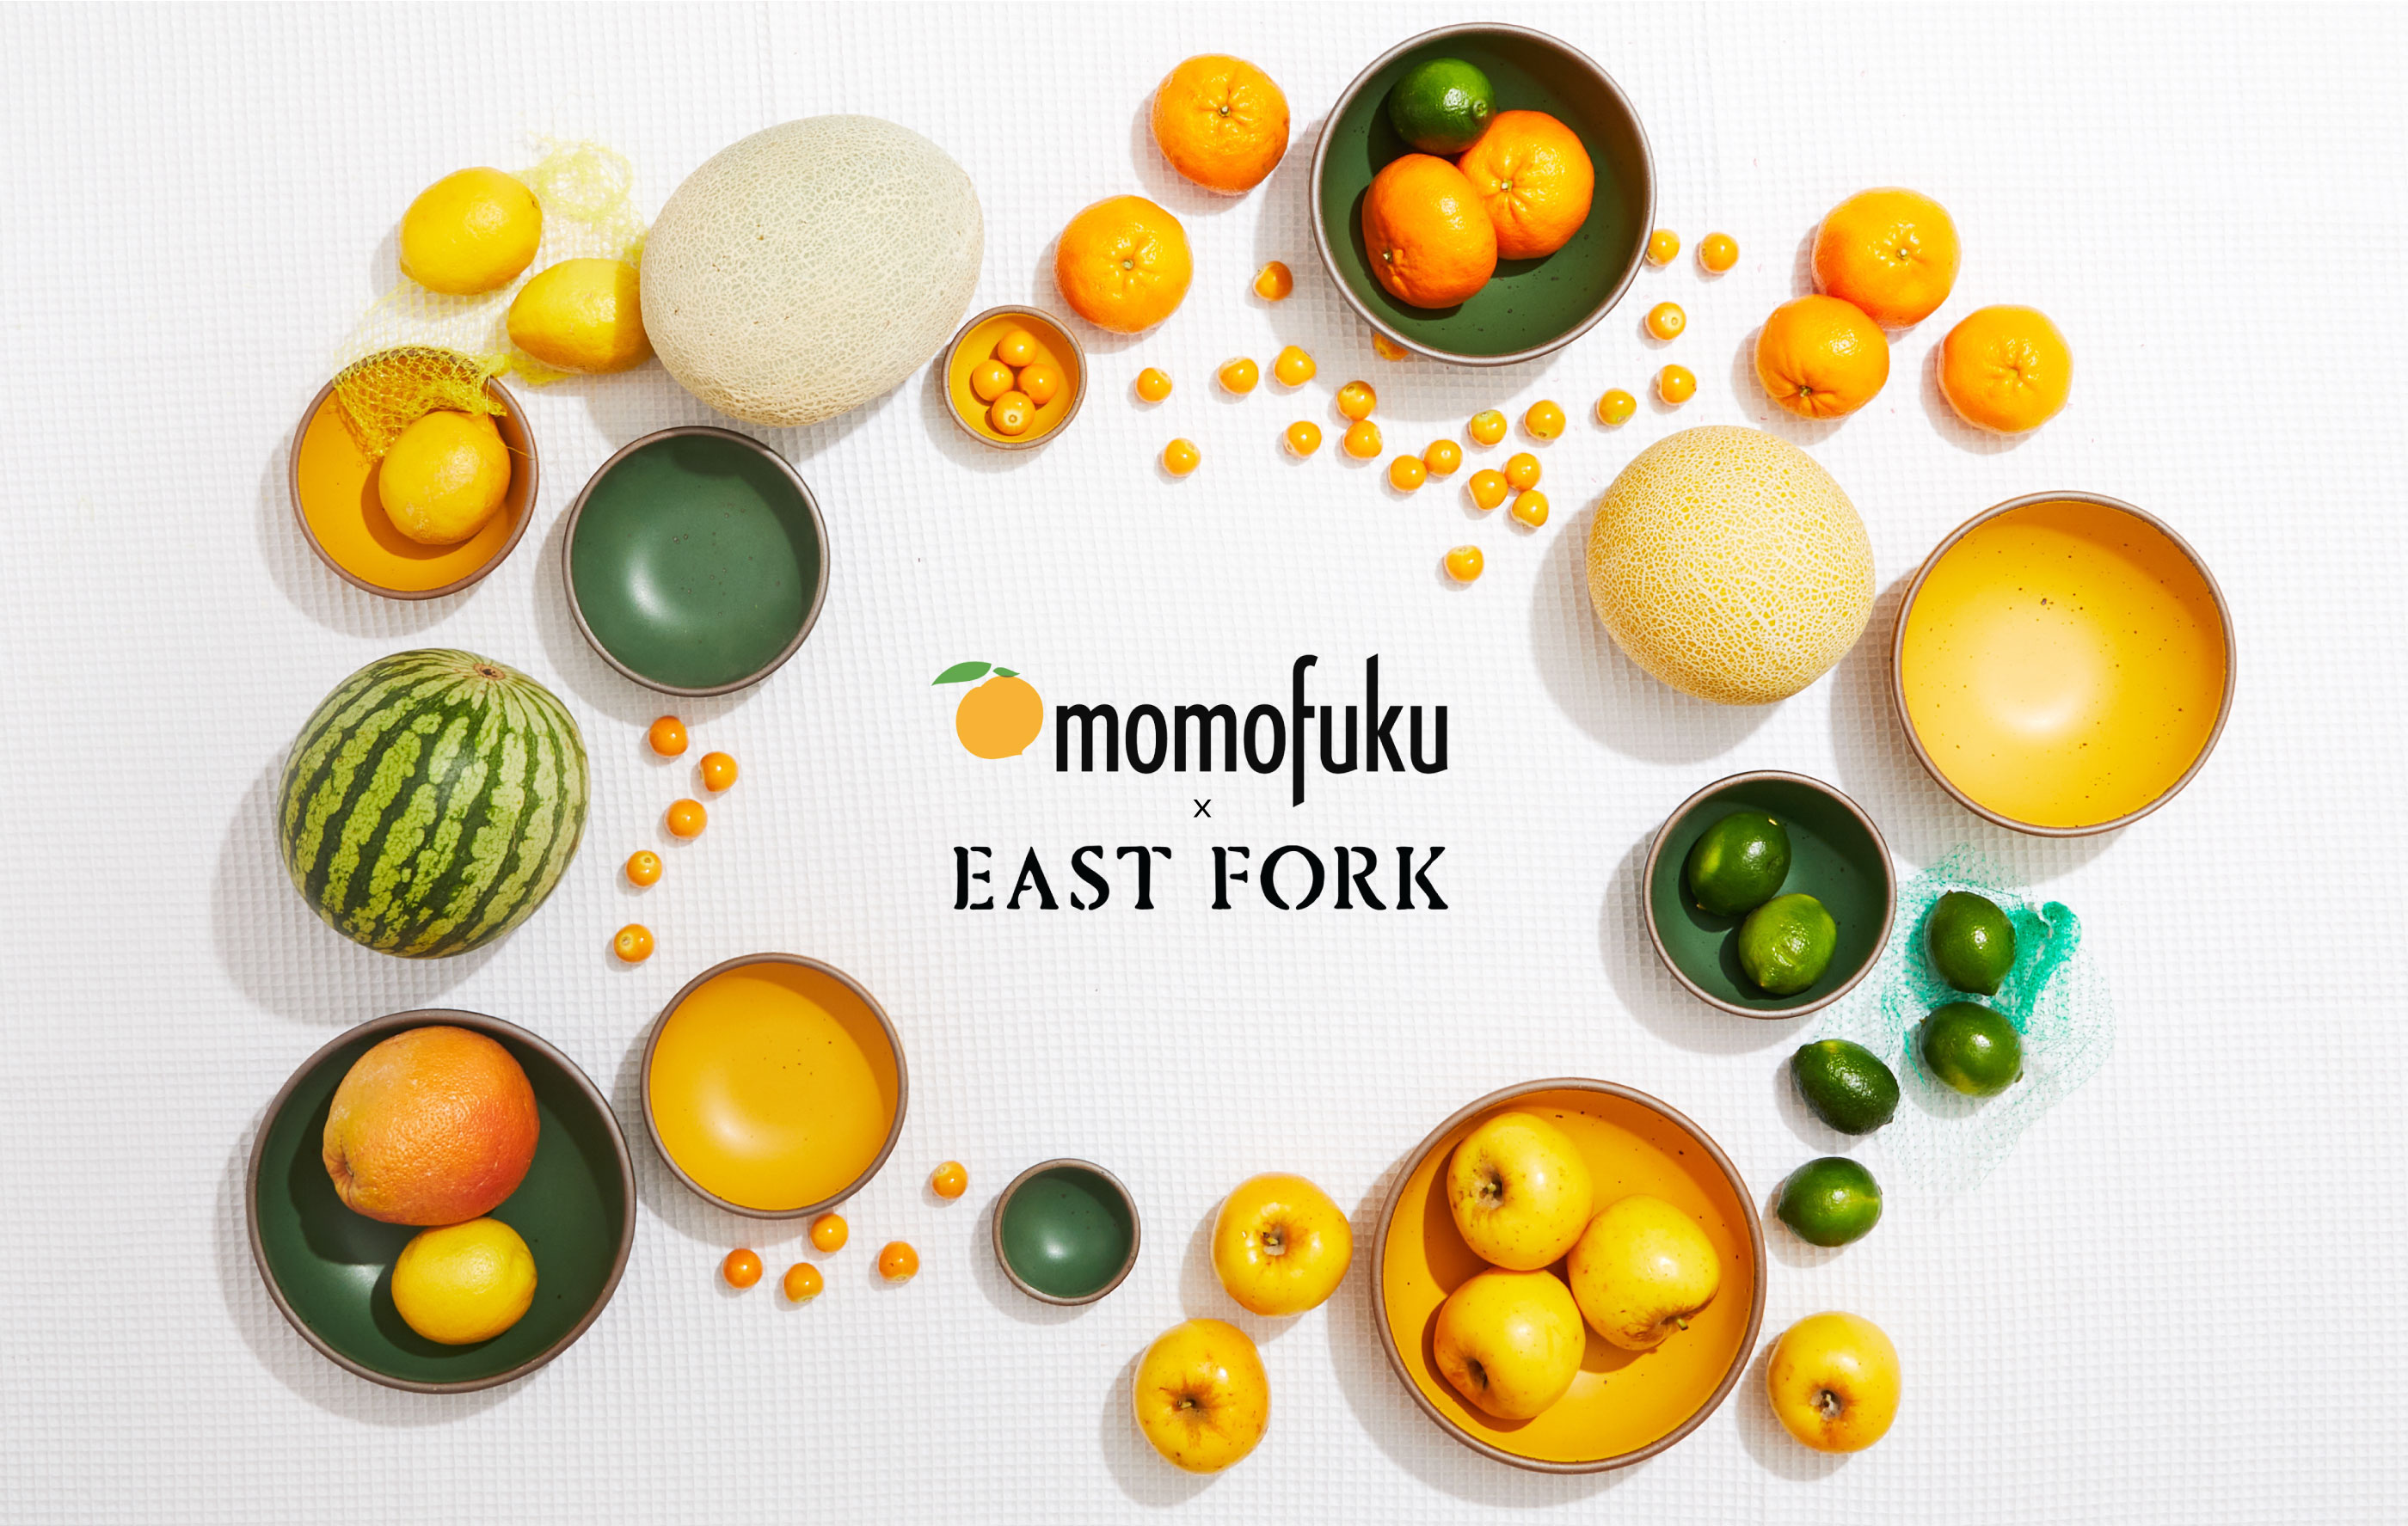 Momofuku x East Fork collaboration is back!